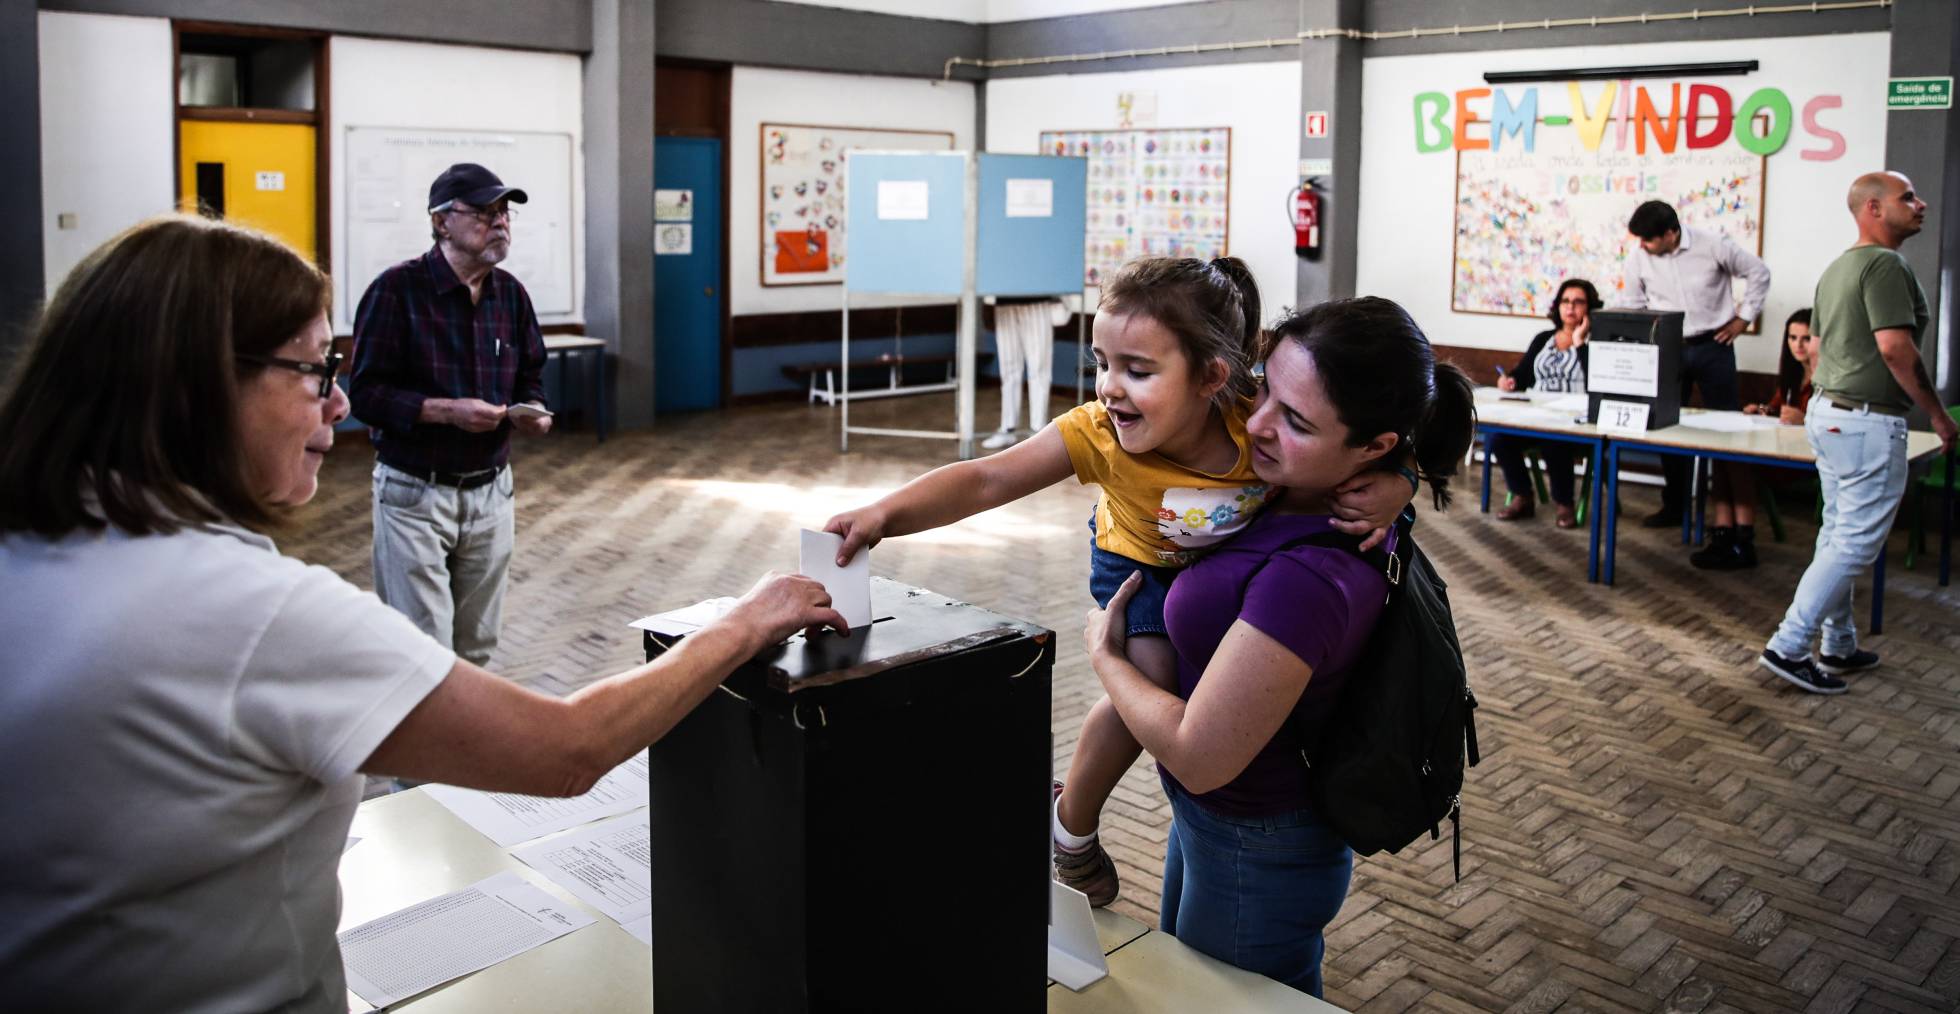 Fotos: Las elecciones generales en Portugal, en imágenes | Internacional |  EL PAÍS